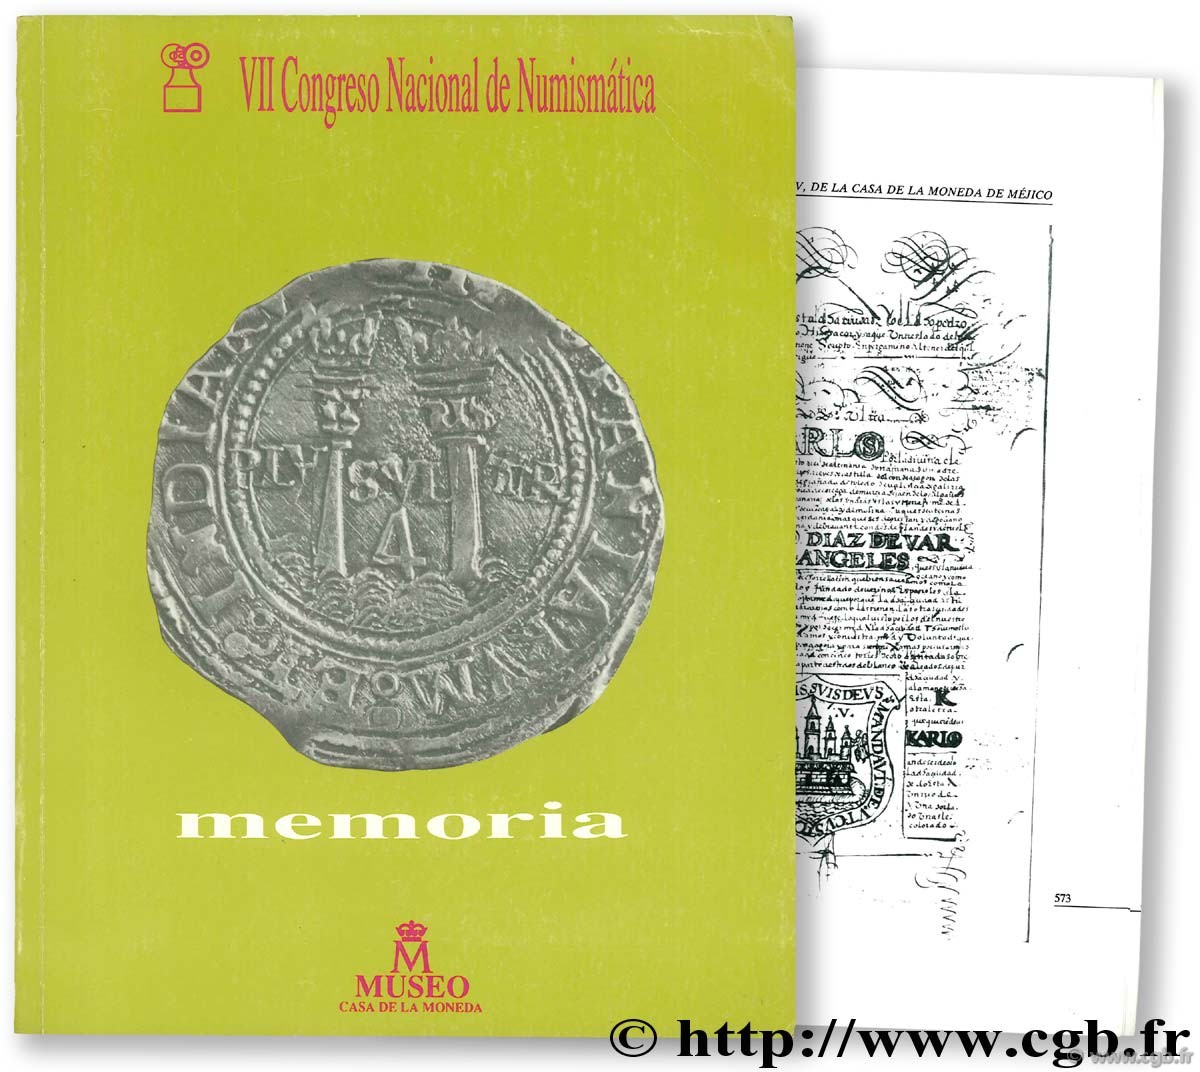 VII Congreso Nacional de Numismática, memoria, madrid 12-15 de diciembre 1989 